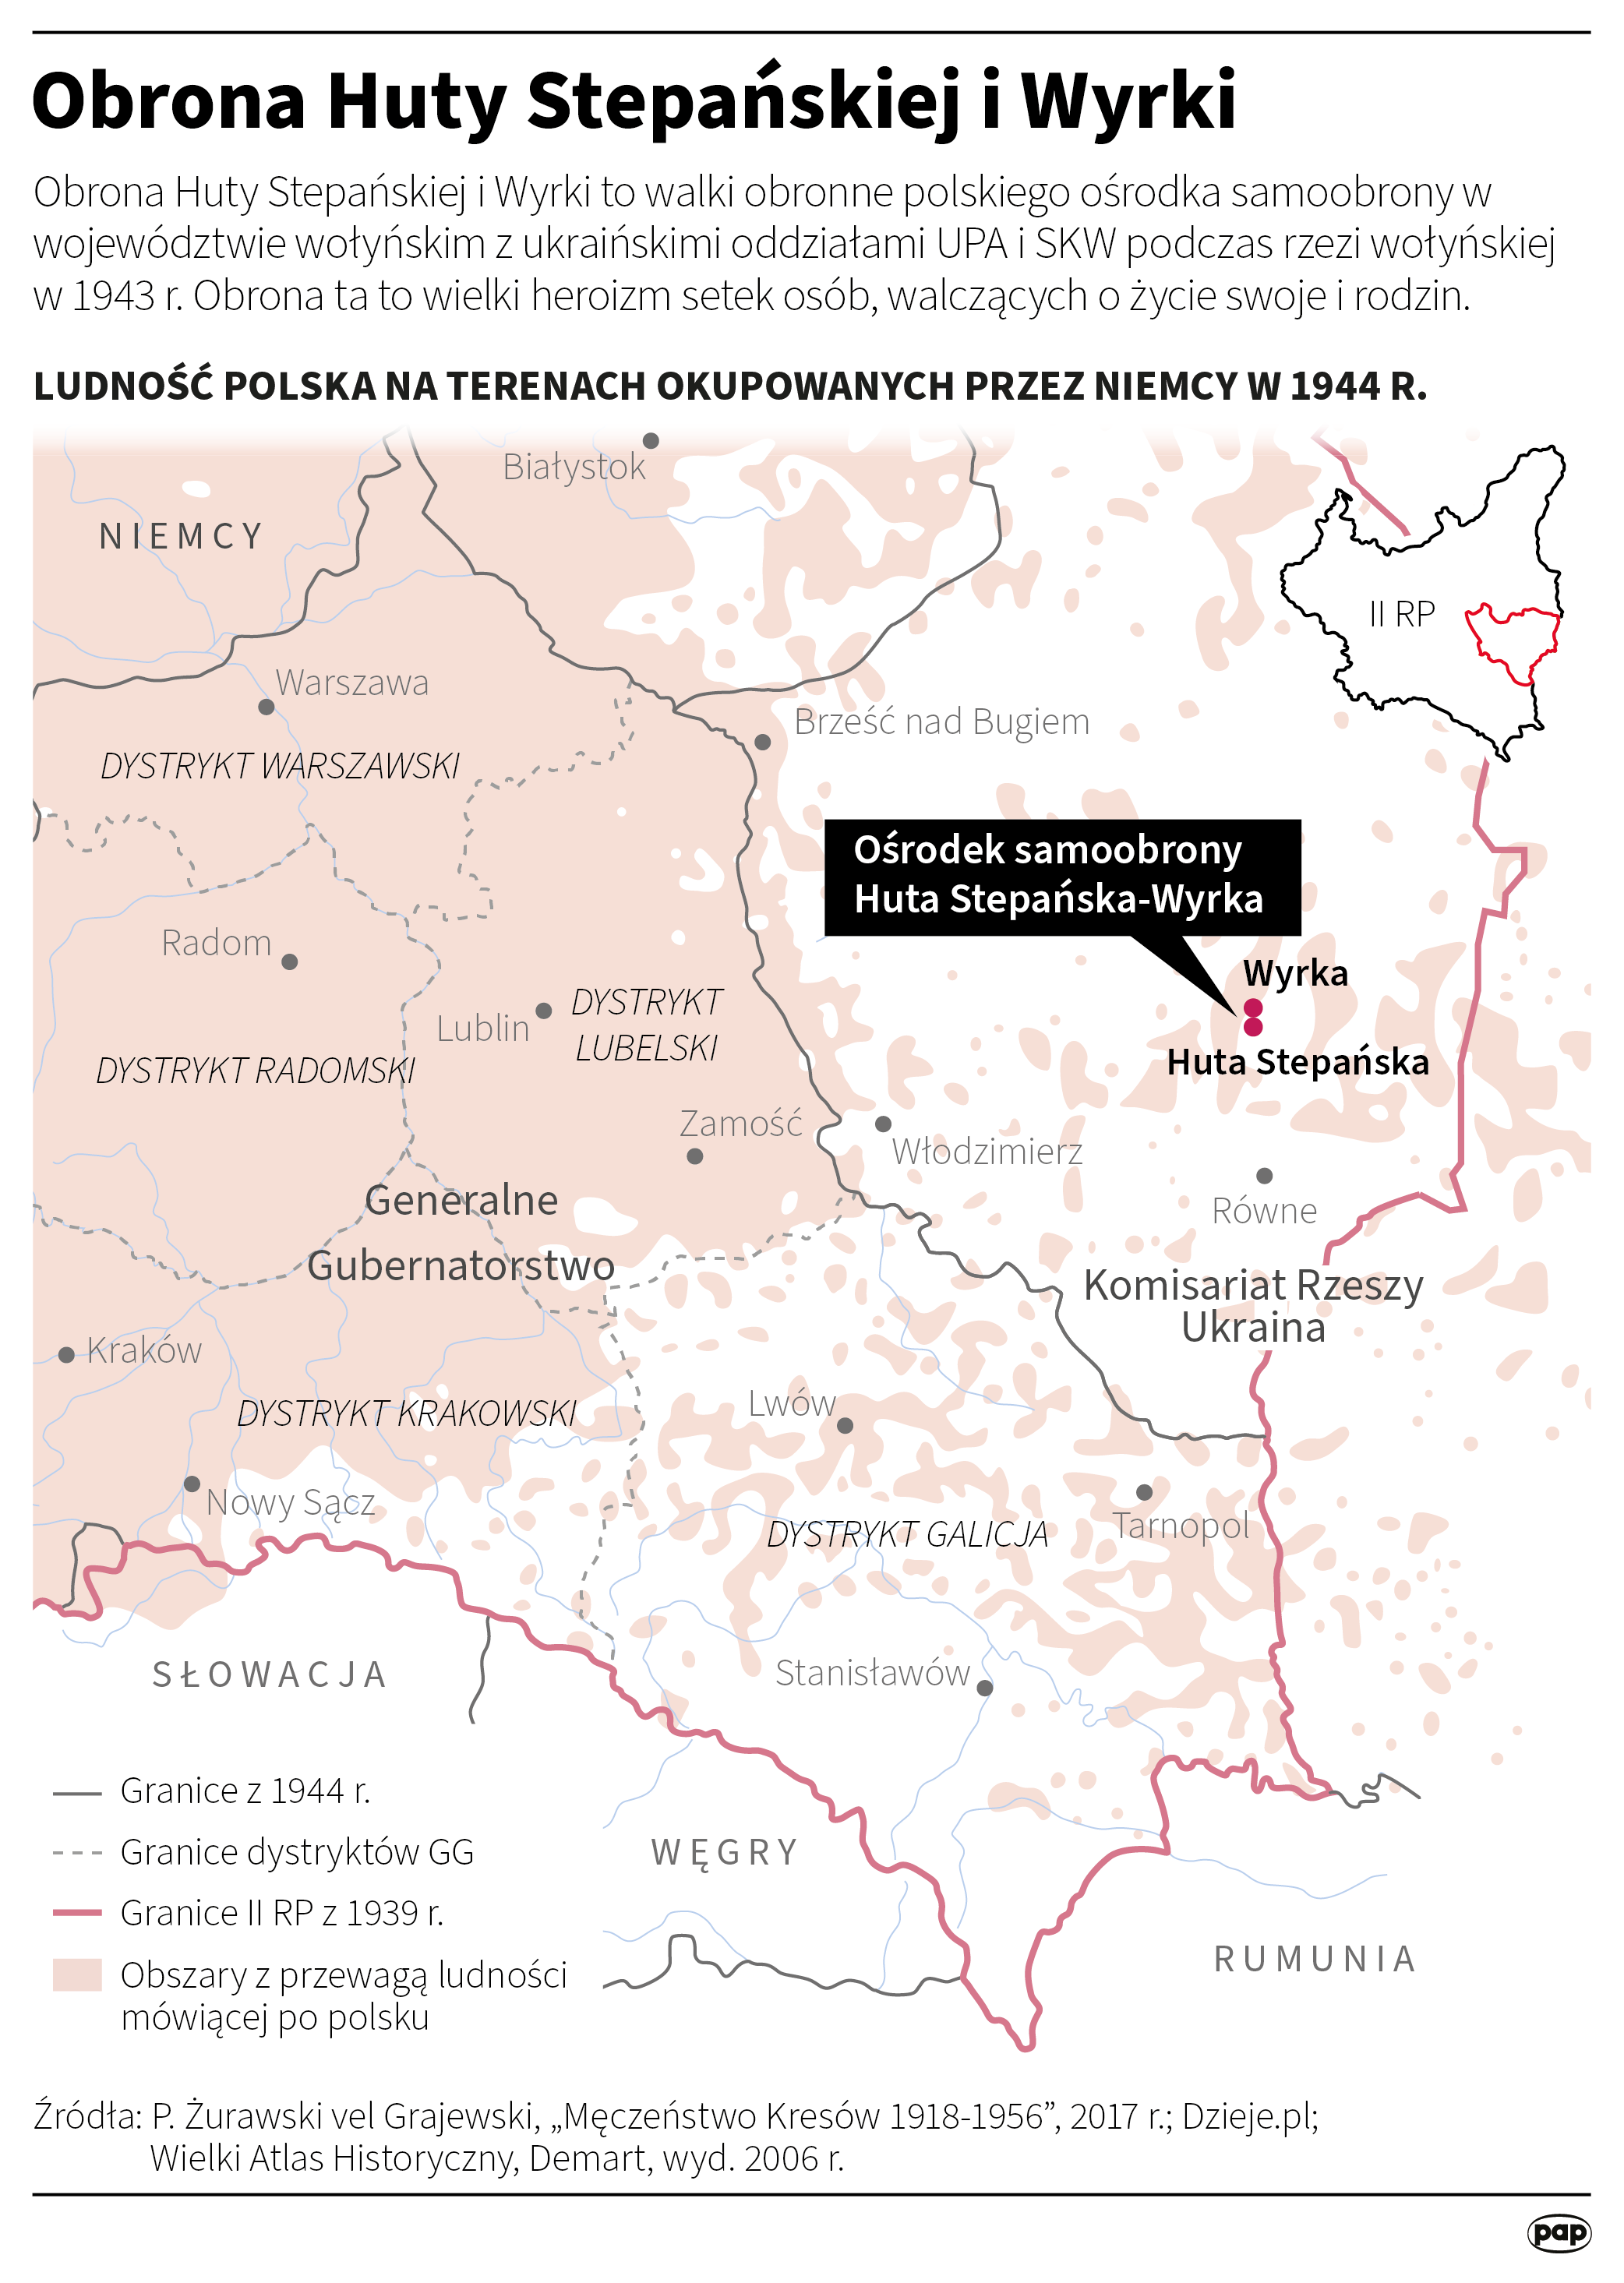 81 lat temu doszło do kulminacji ludobójstwa na Polakach na Wołyniu Radio Zachód - Lubuskie